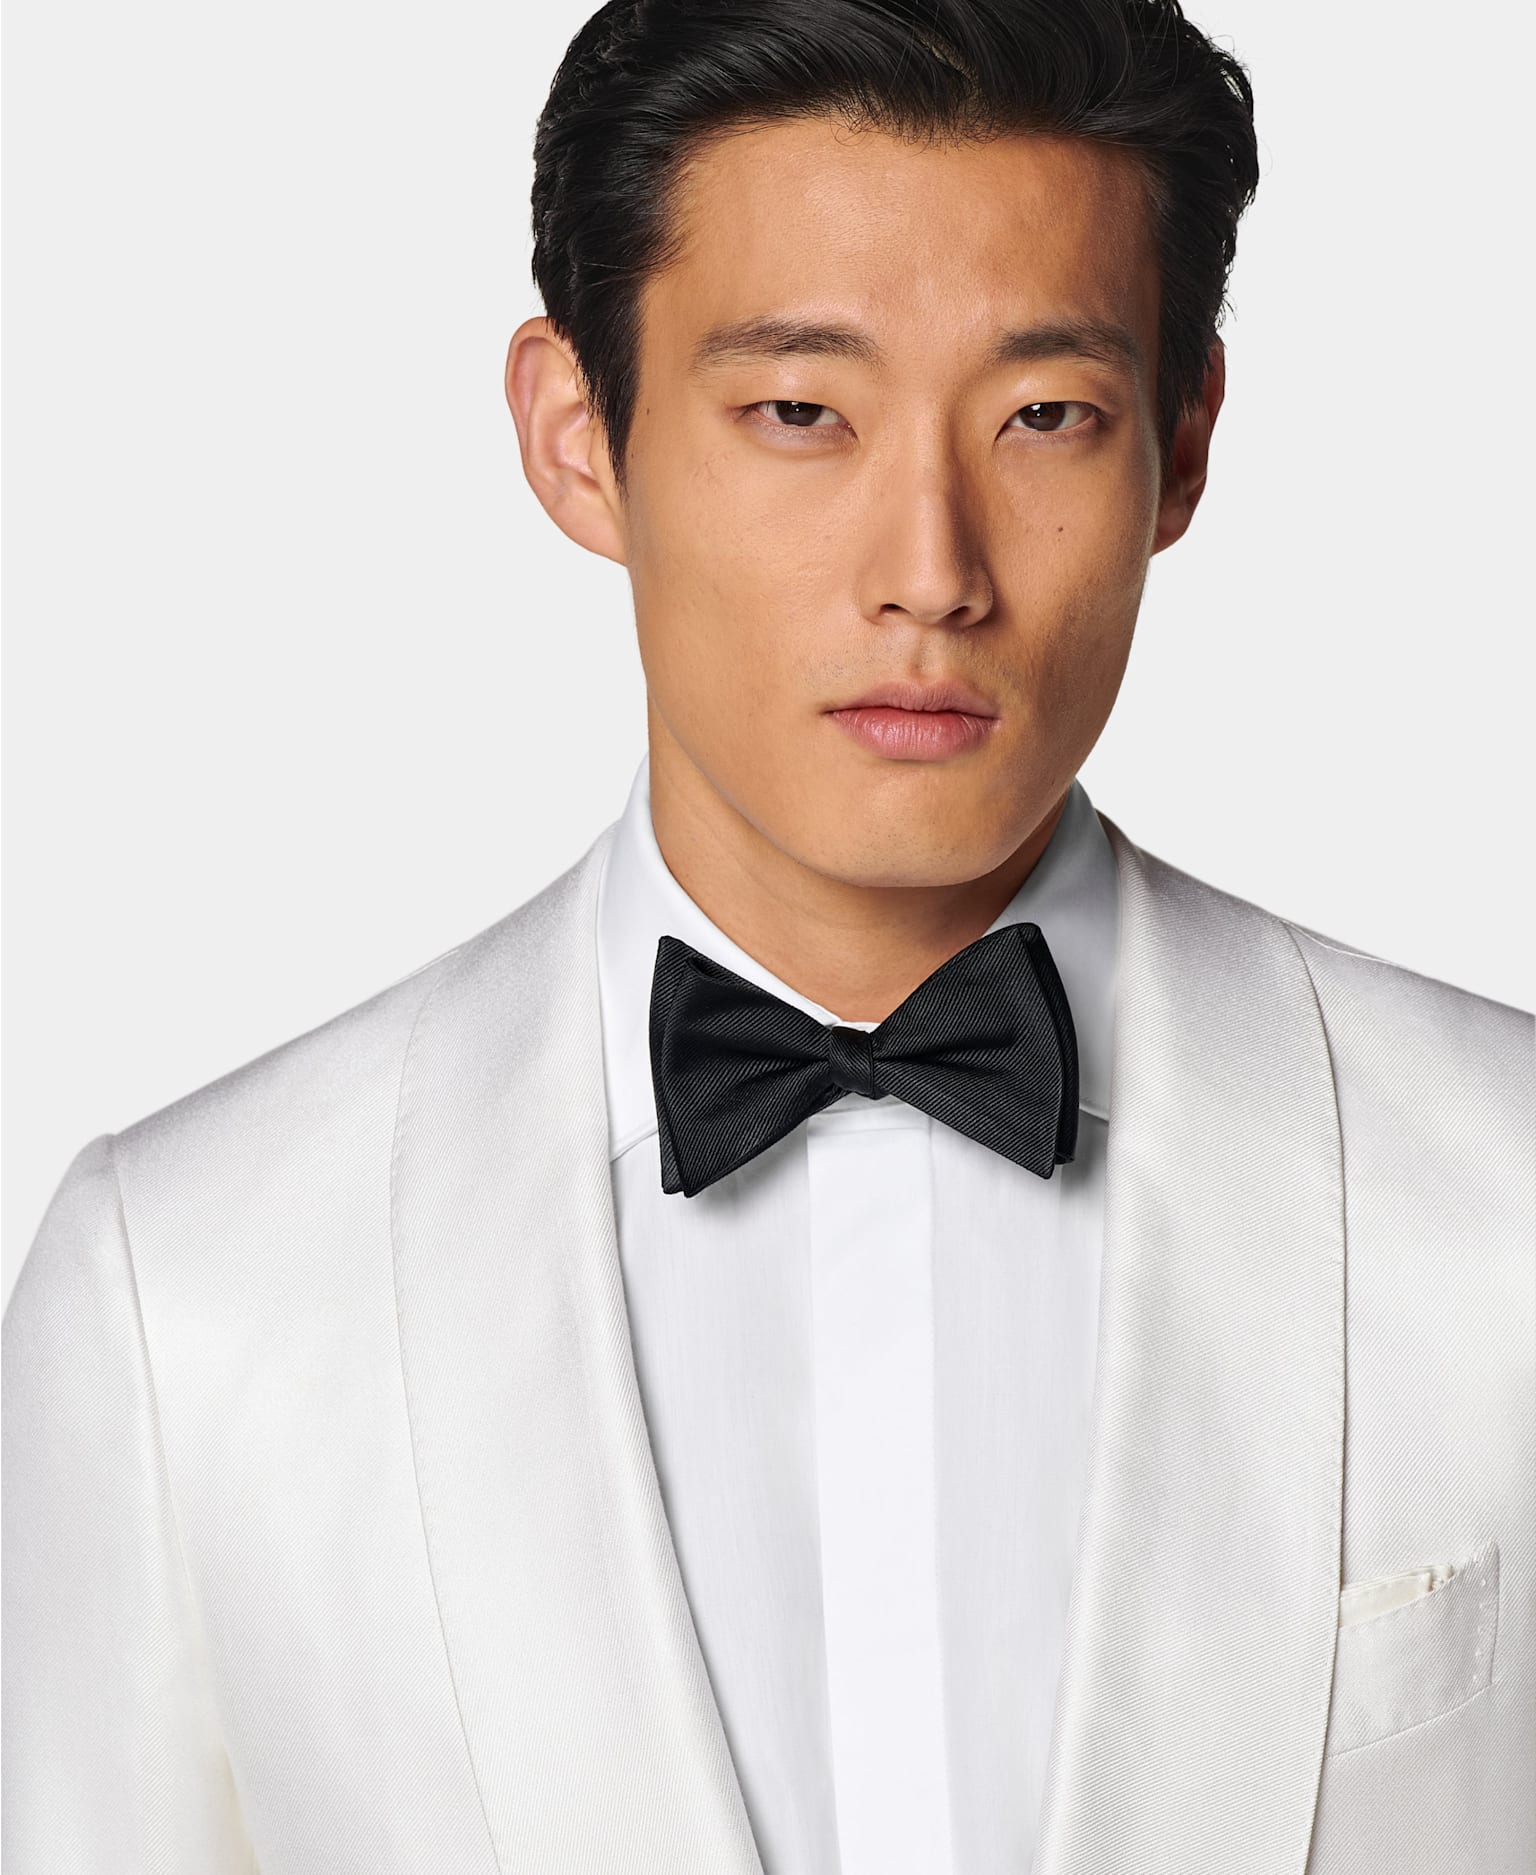 Dettaglio di giacca da sera bianca con colletto sciallato con camicia bianca e abbottonatura nascosta, e papillon nero in seta.